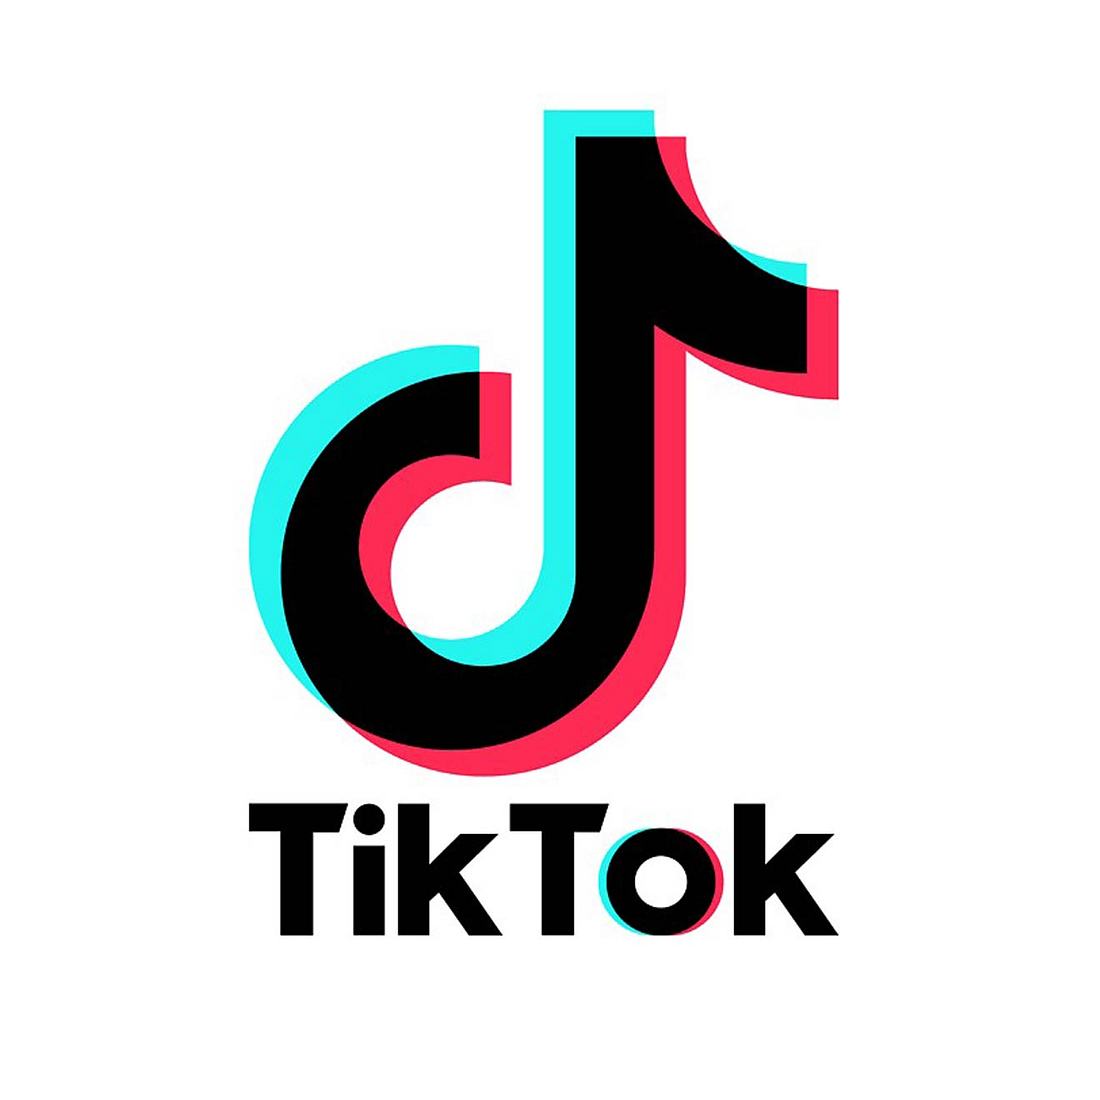 TikTok ist das am meisten wachsende soziale Netzwerk im Moment. Doch manche User nutzen Challenges, um sich über Andere lustig zu machen. Das verstößt eindeutig gegen den Verhaltenskodex!